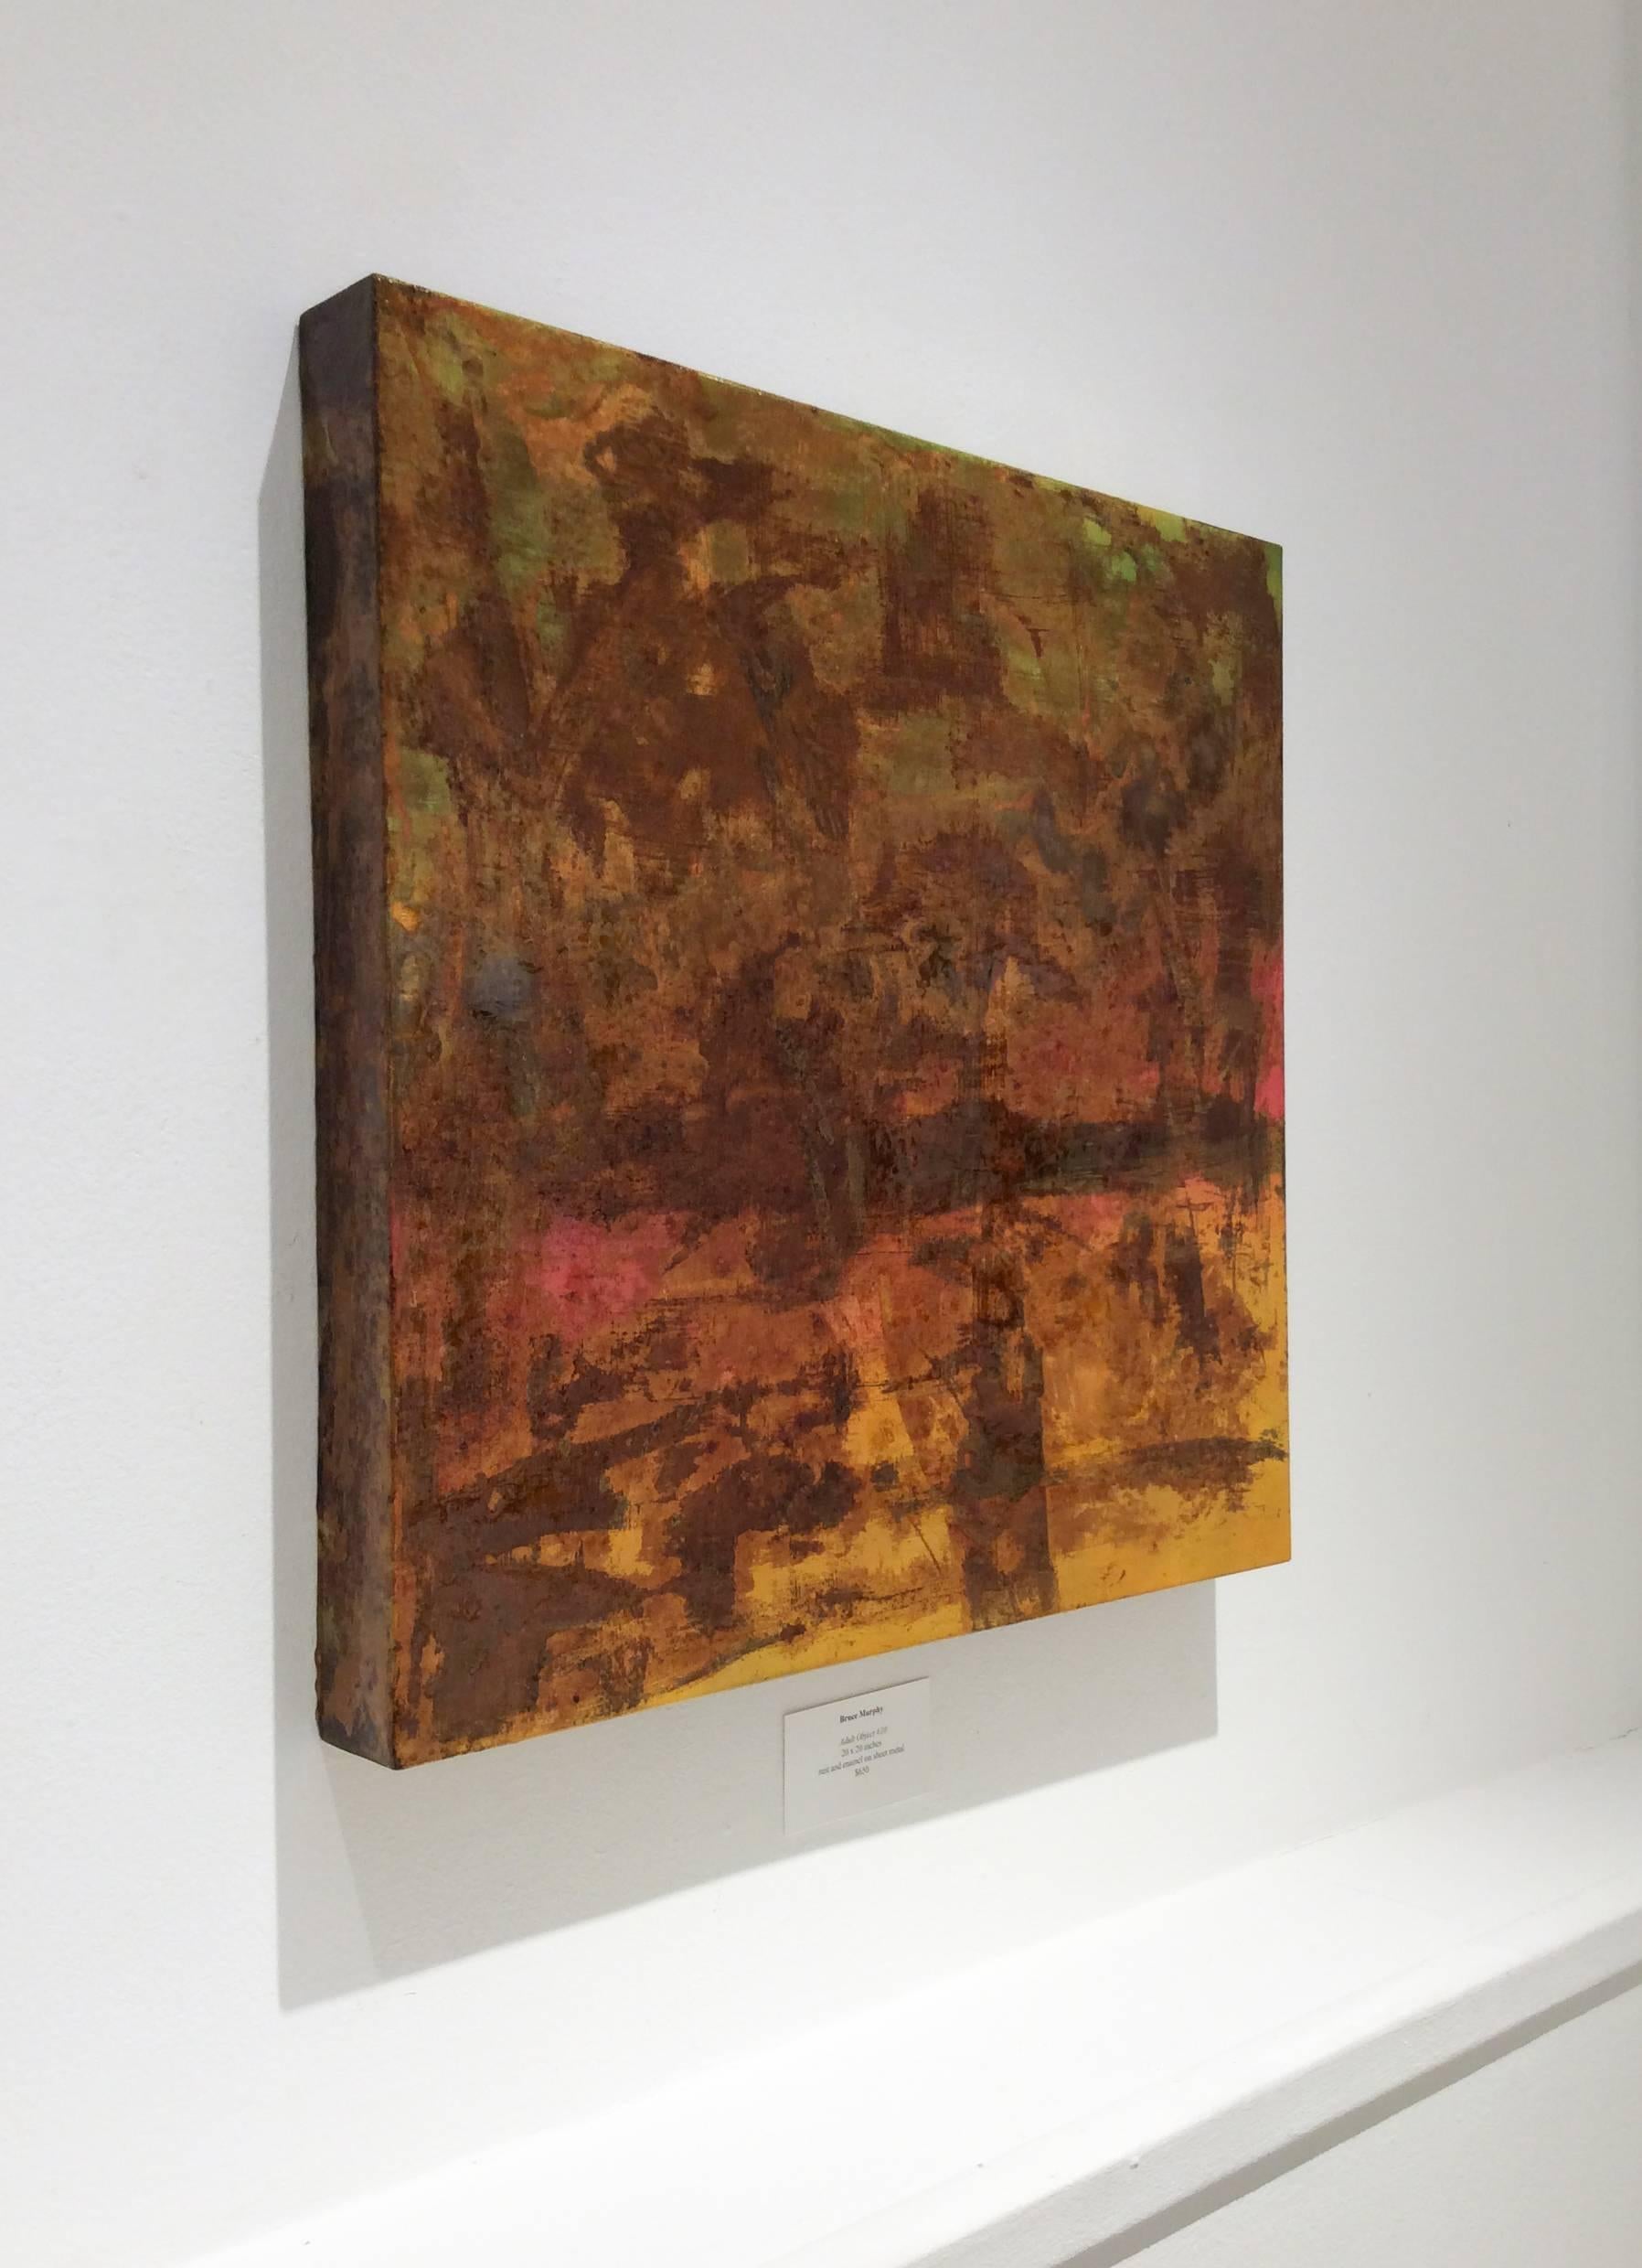 Objet adulte n°10 (peinture abstraite de couleur rouille sur tôle métallique) - Painting de Bruce Murphy